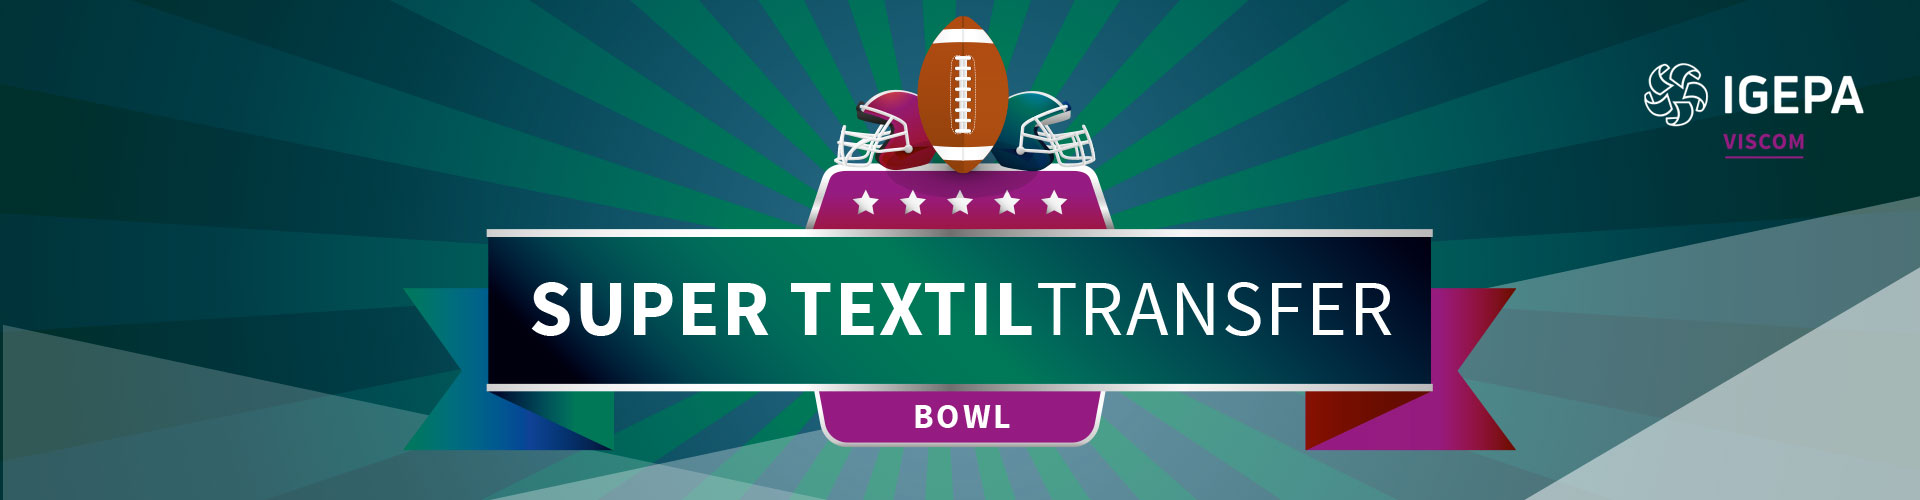 Super Textiltransfer Bowl